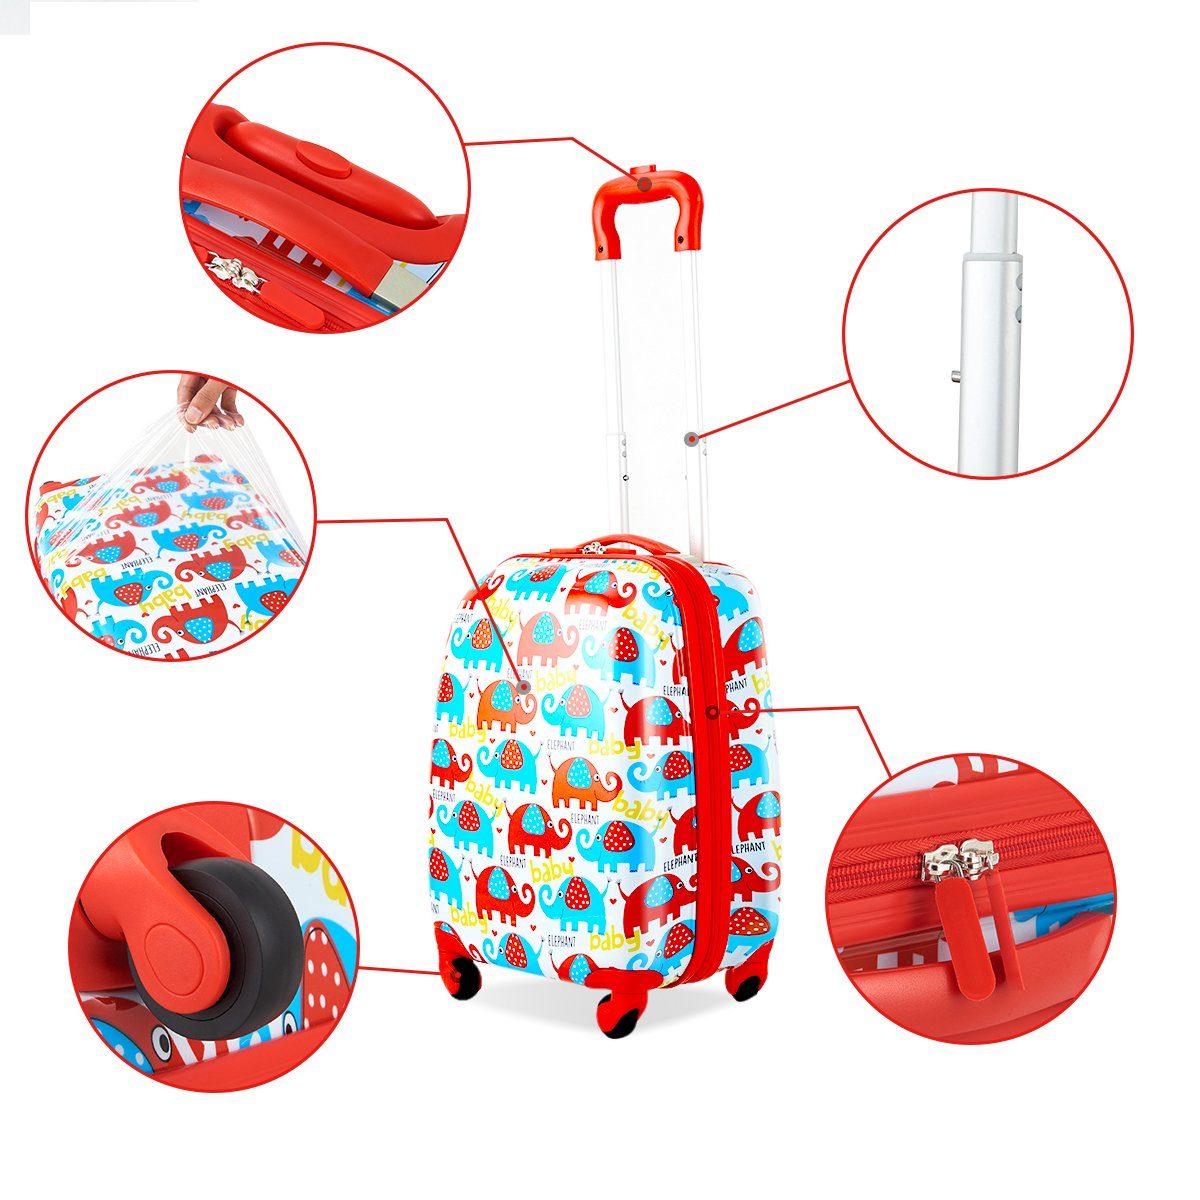 COSTWAY Kinderkoffer Rucksack Kindergepäck, 2tlg Reisegepäck, + Kinderkoffer